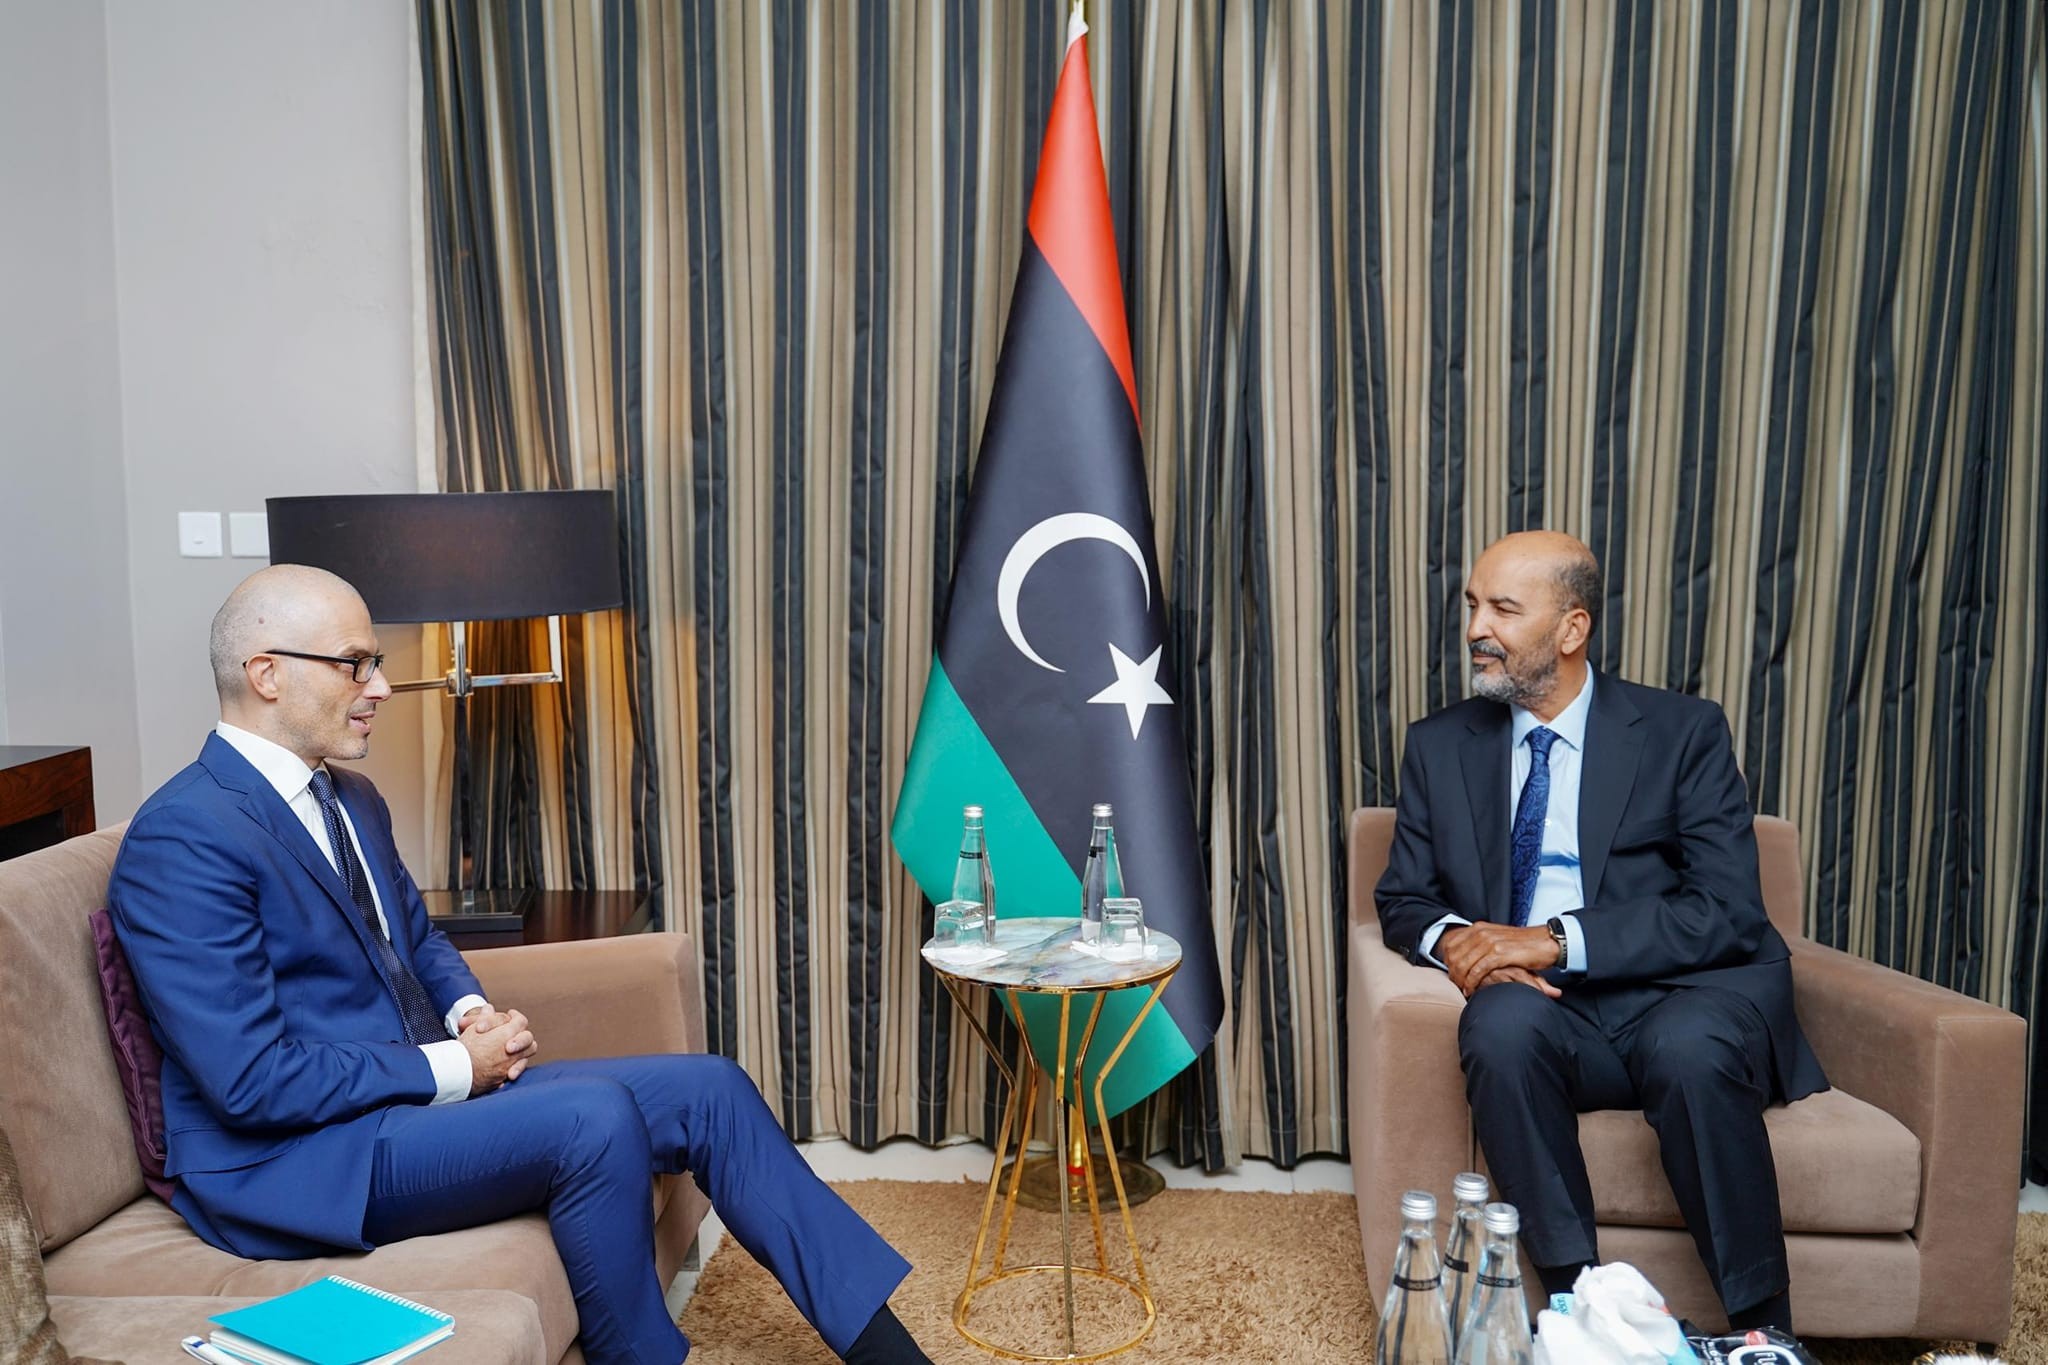  الكوني يبحث مع سفير الاتحاد الأوروبي لدى ليبيا الملفات ذات الاهتمام المشترك